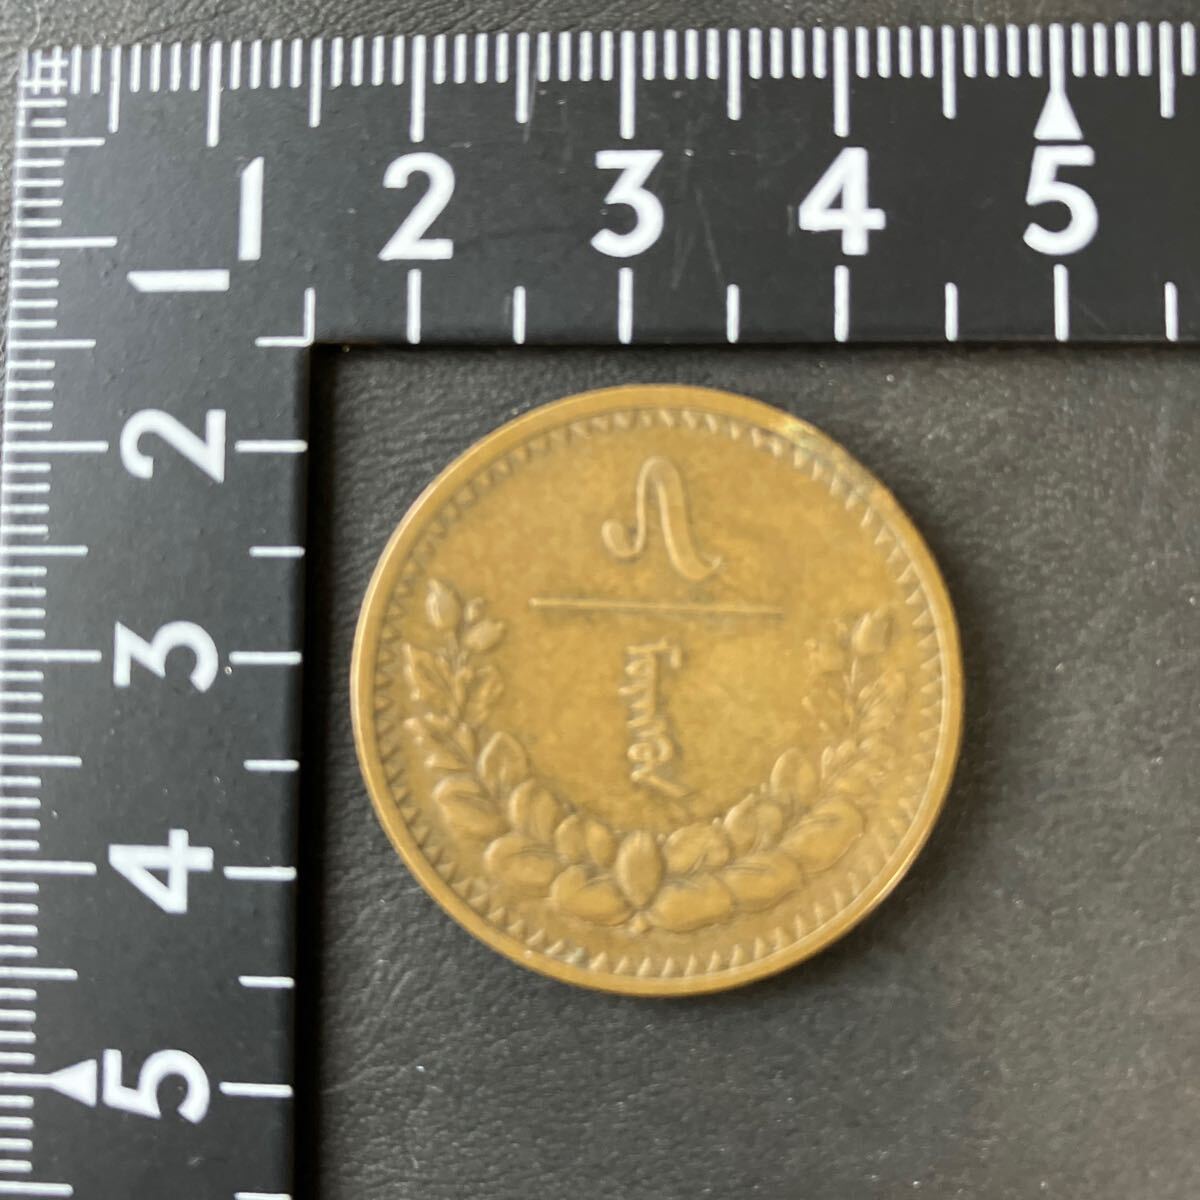 [ зарубежный старая монета ]mongoru медная монета монета за границей деньги коллекция редкость *23